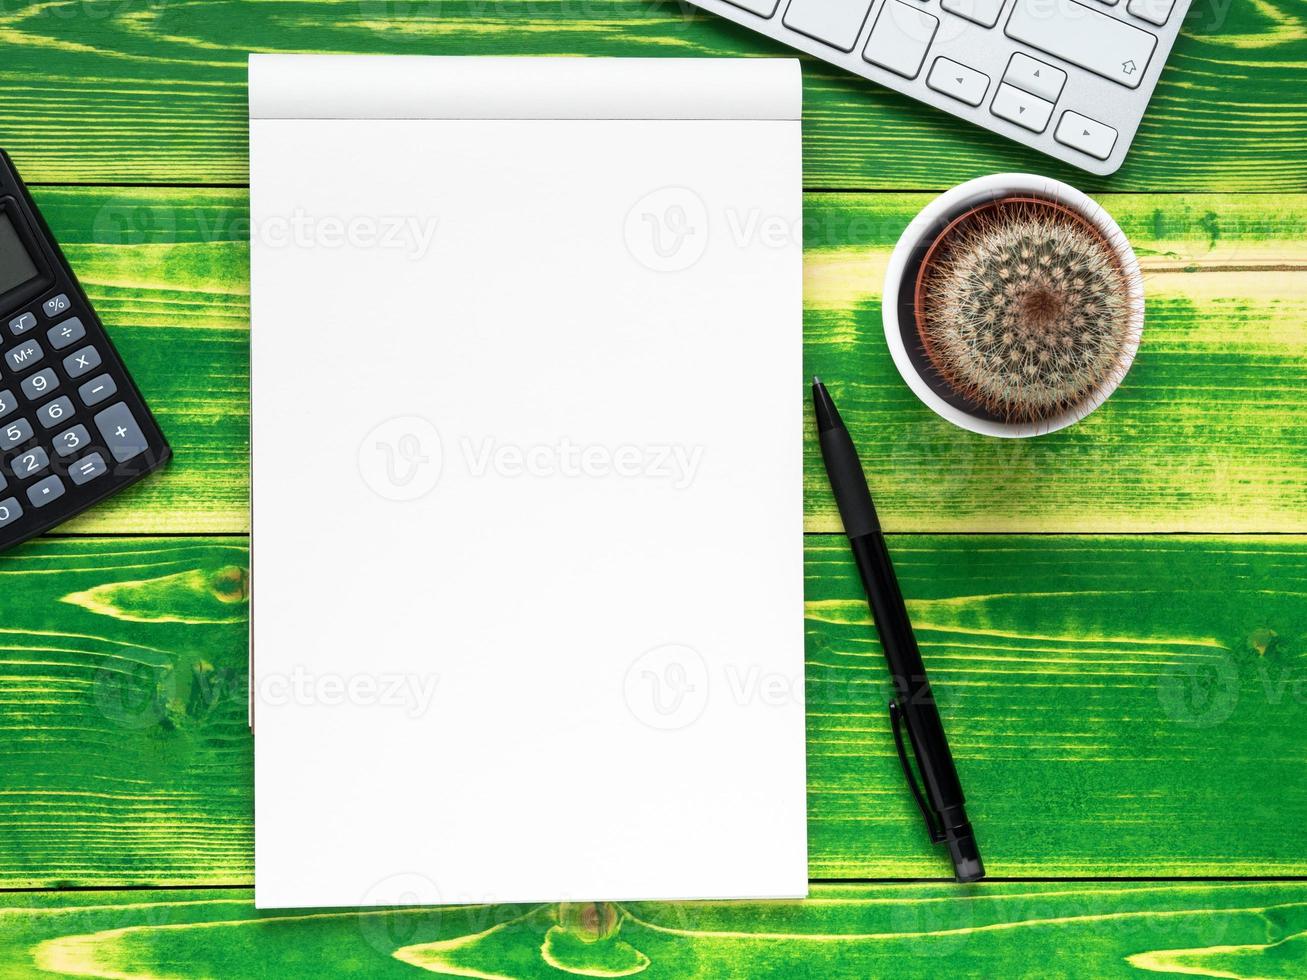 caderno aberto com página em branco, caneta, calculadora, teclado de computador, cacto foto